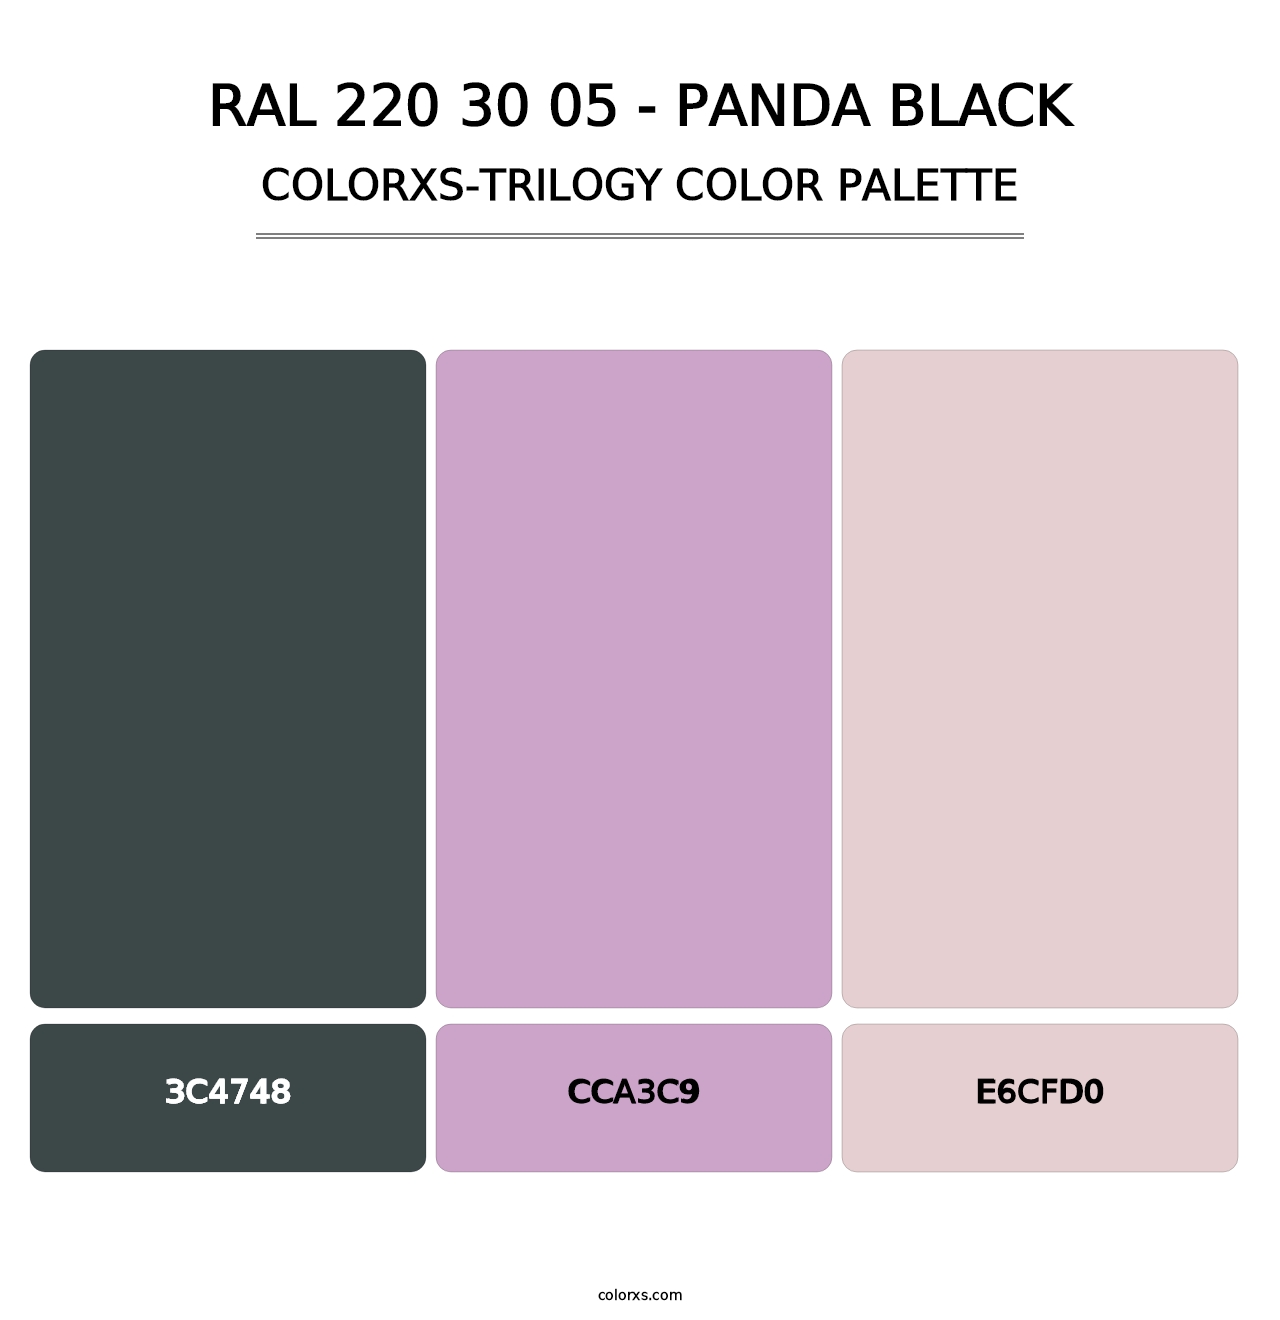 RAL 220 30 05 - Panda Black - Colorxs Trilogy Palette